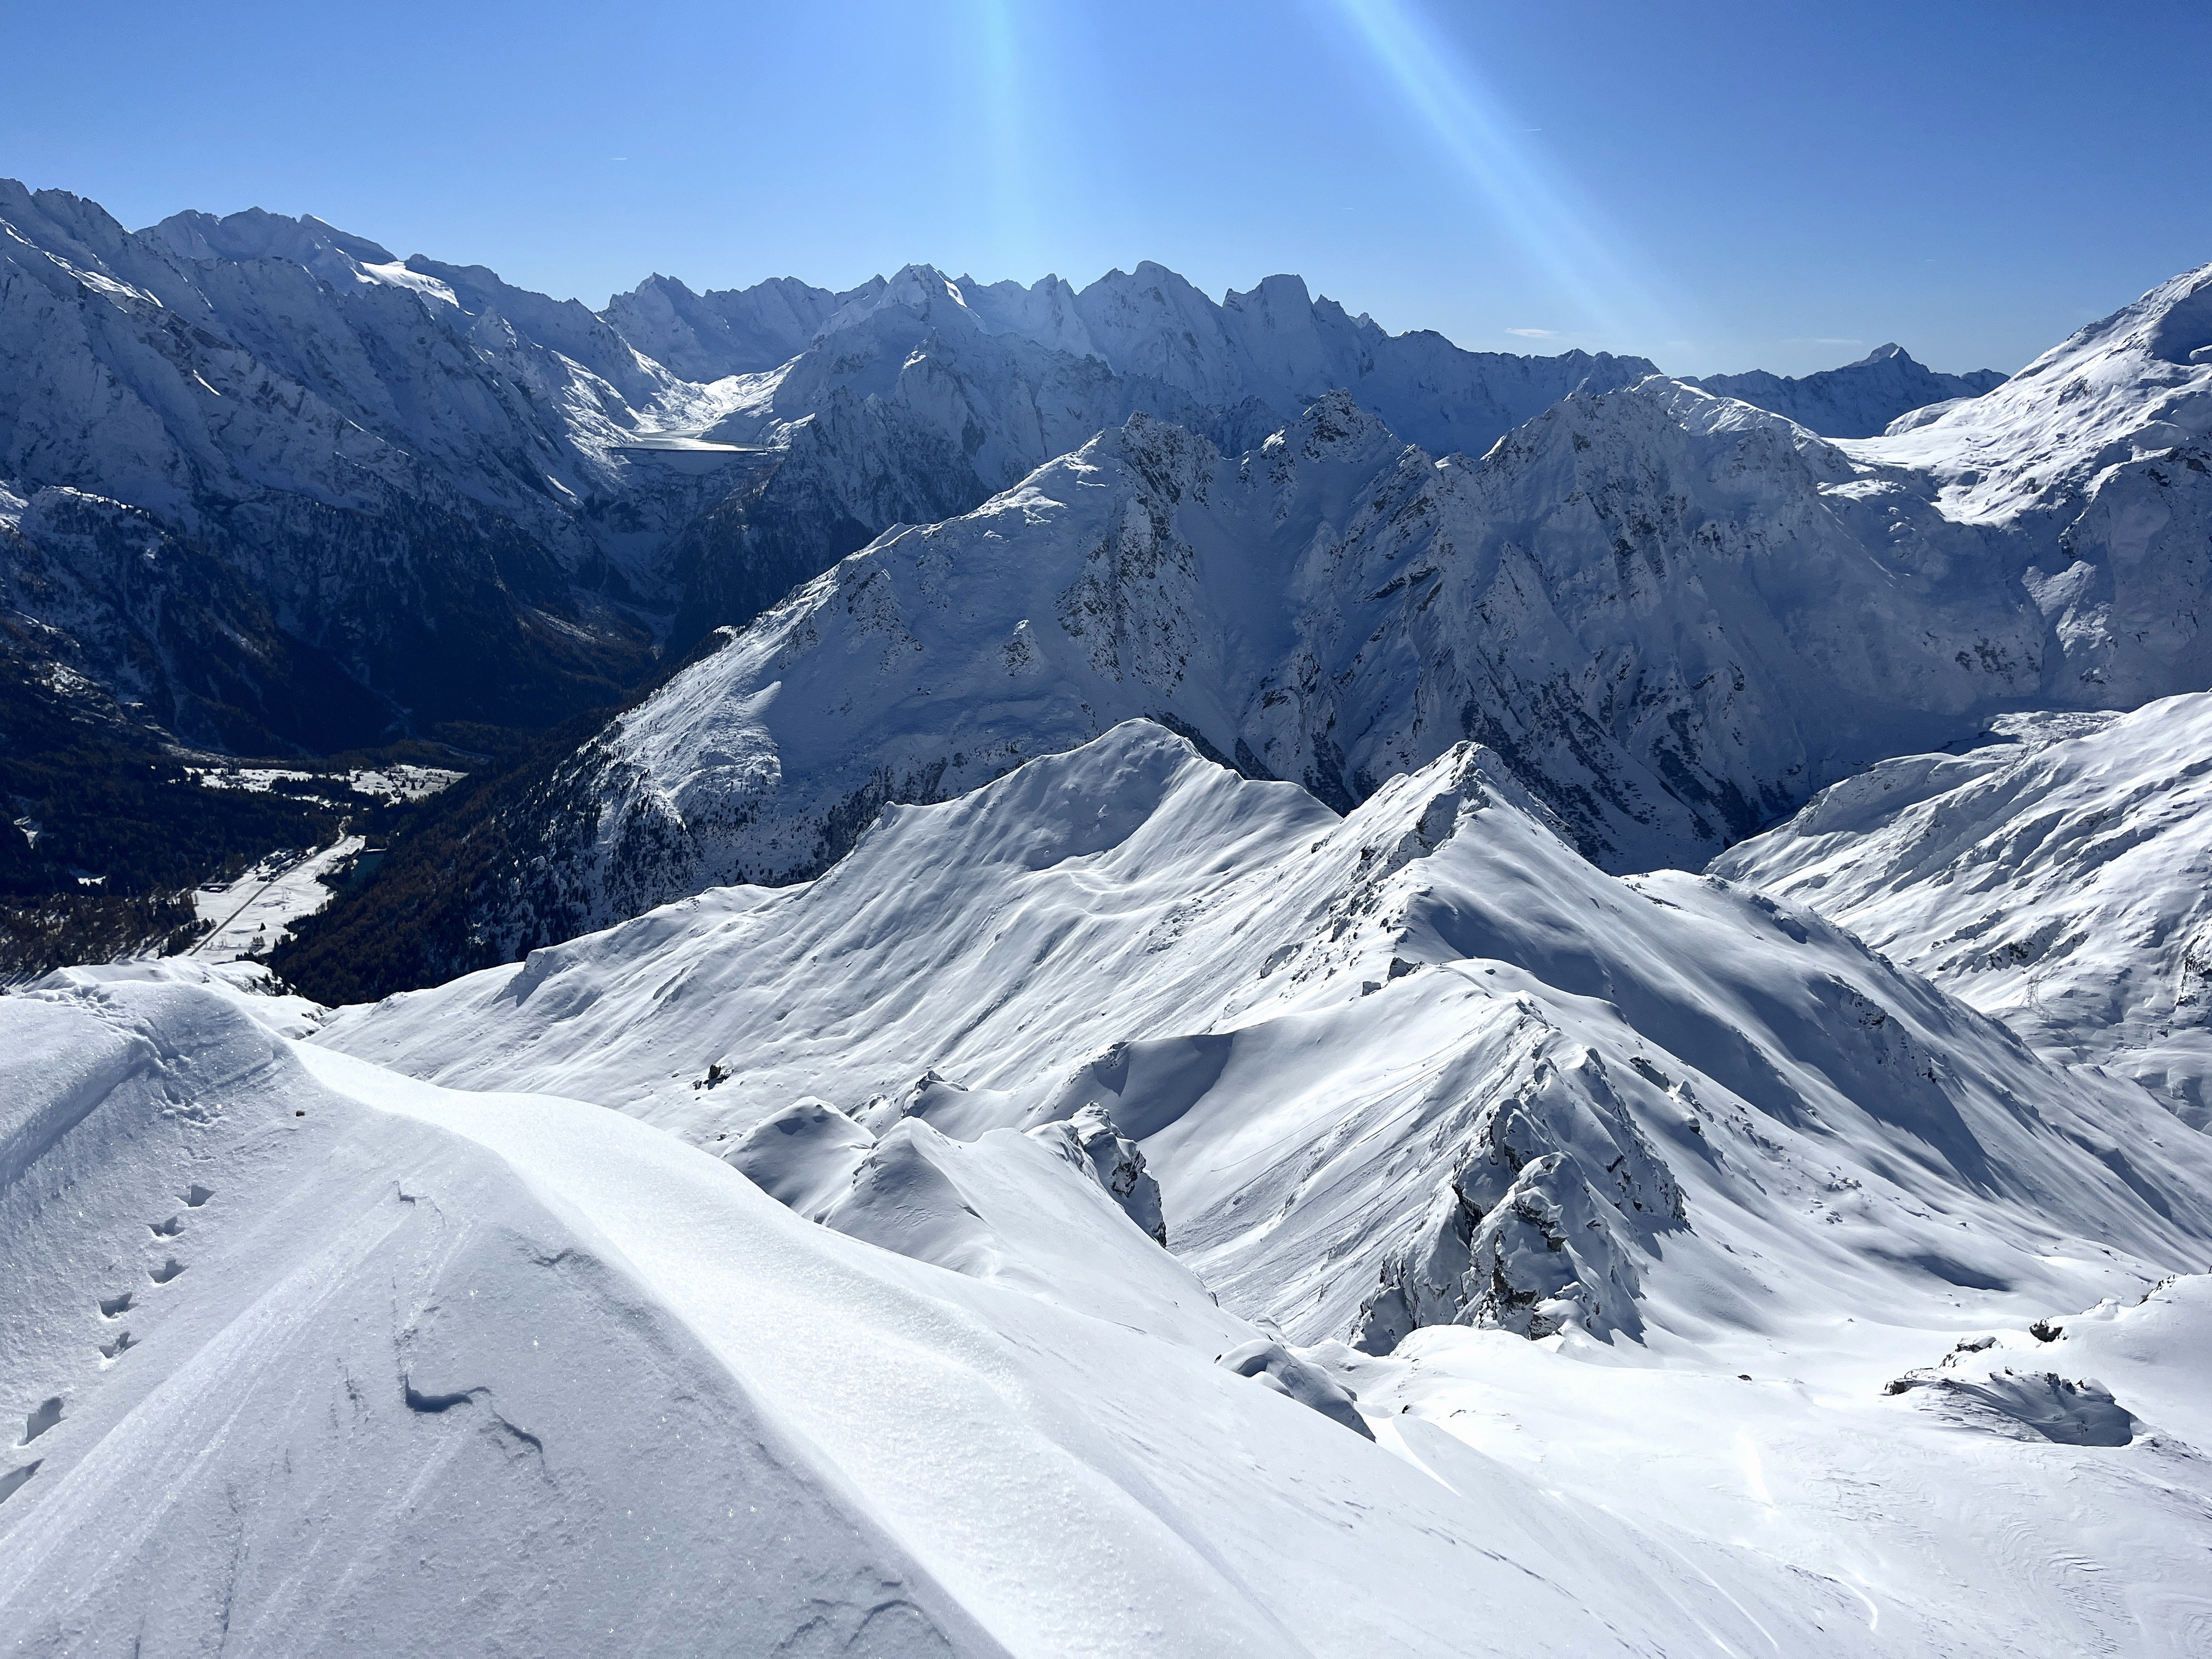 Der Ausblick zu den tief verschneiten Bergeller Gipfeln Pizzo Badile, Cengalo und Co.